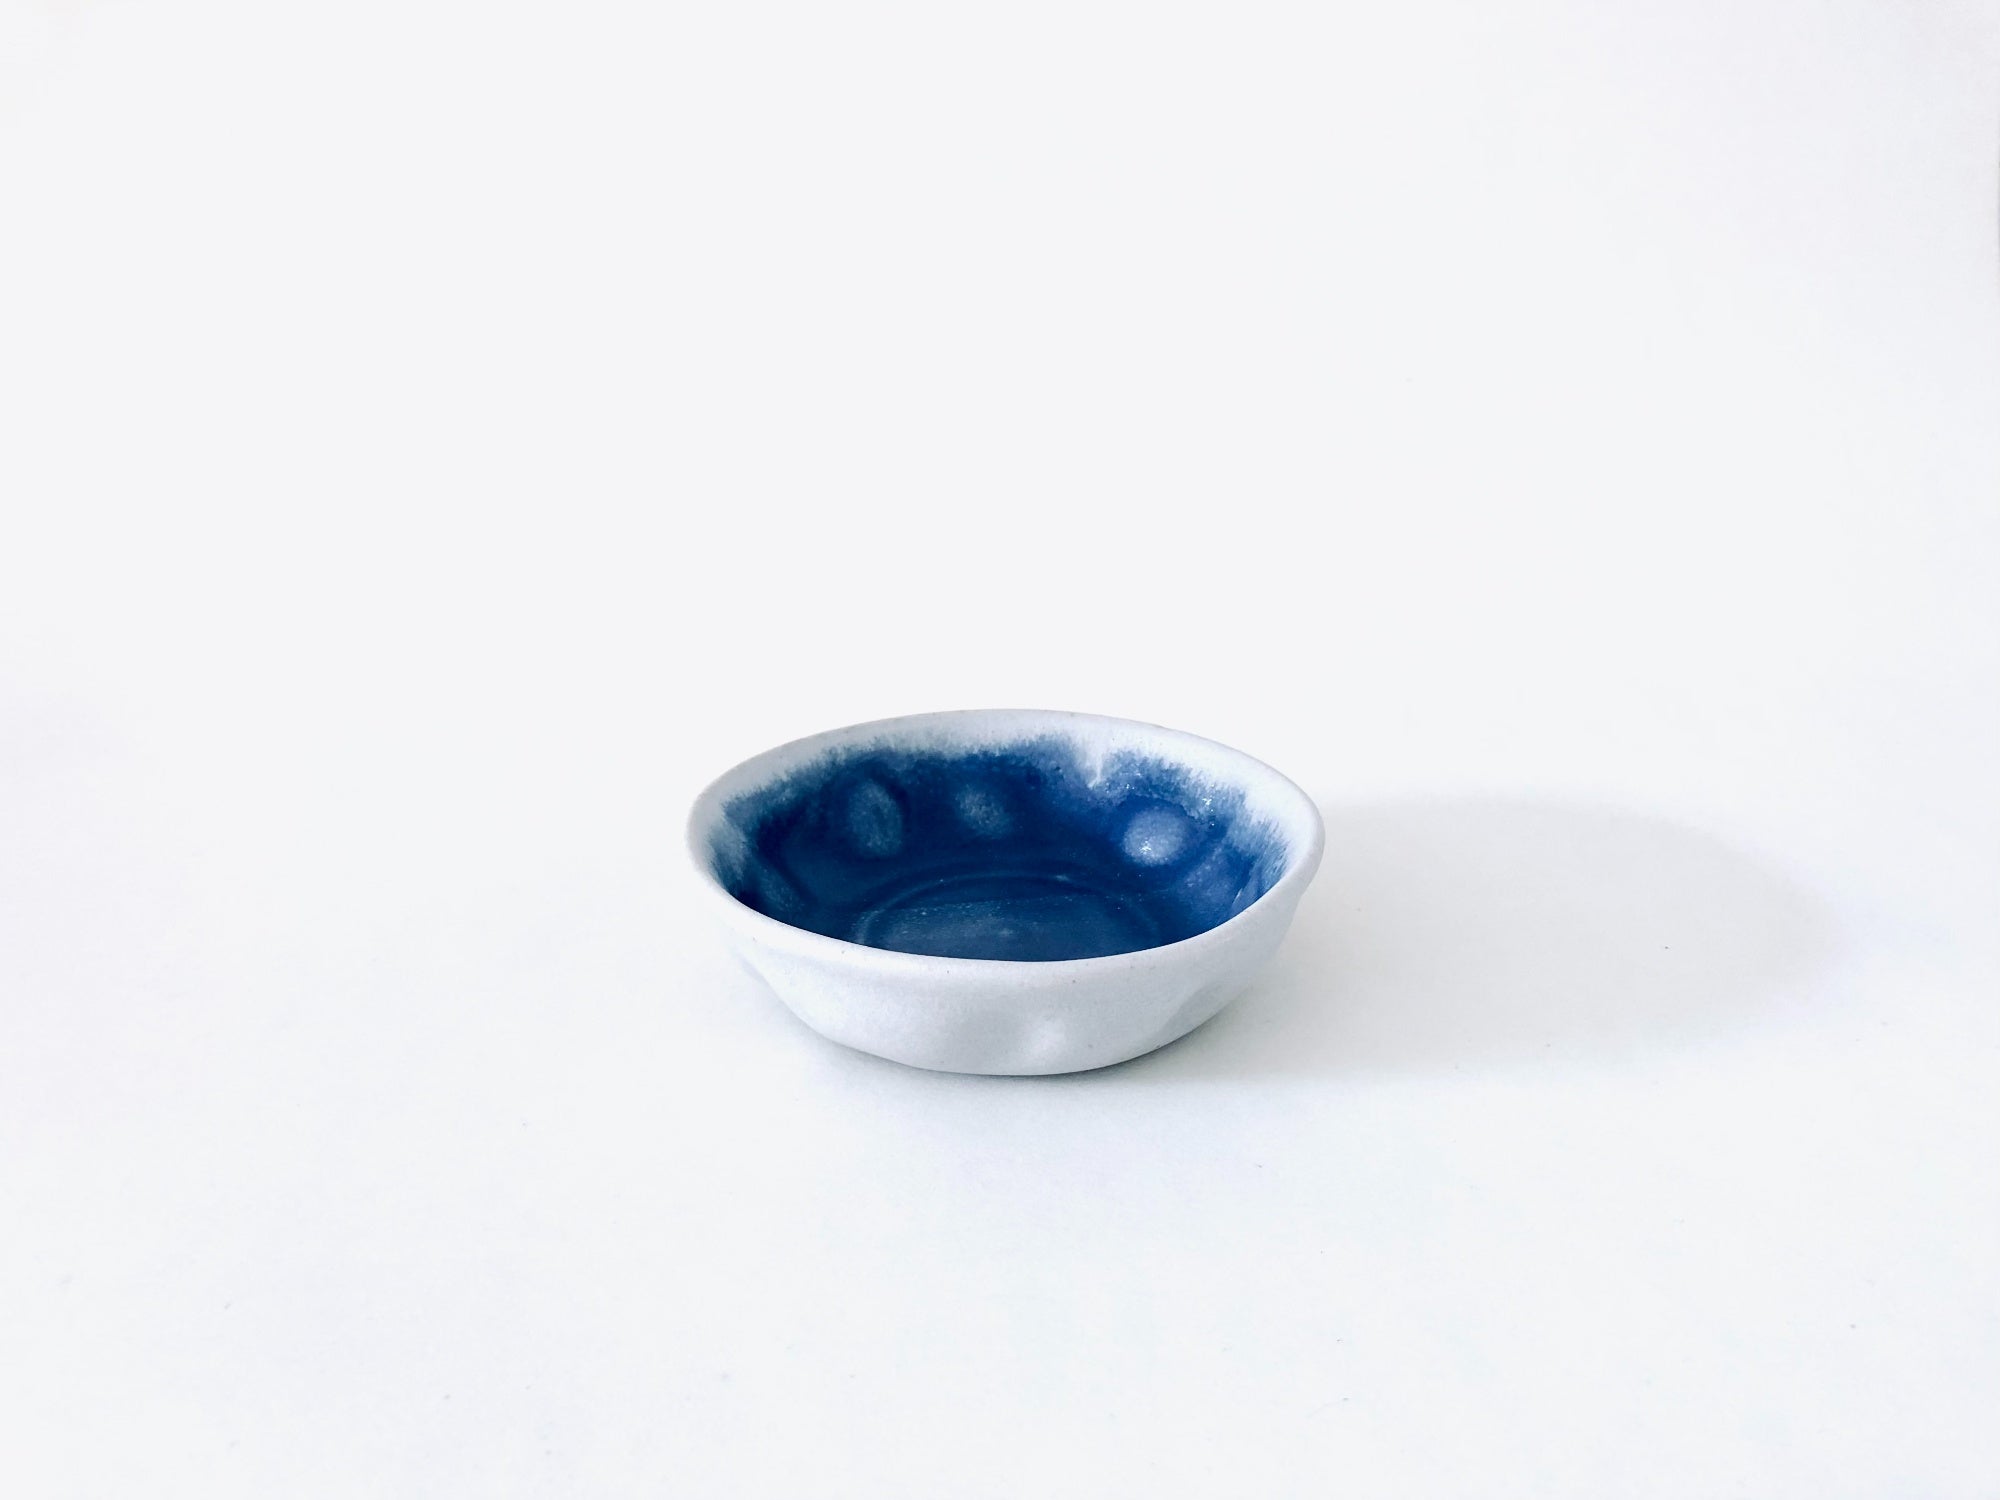 Winter Blue Dessert Bowls by Vivian Lam